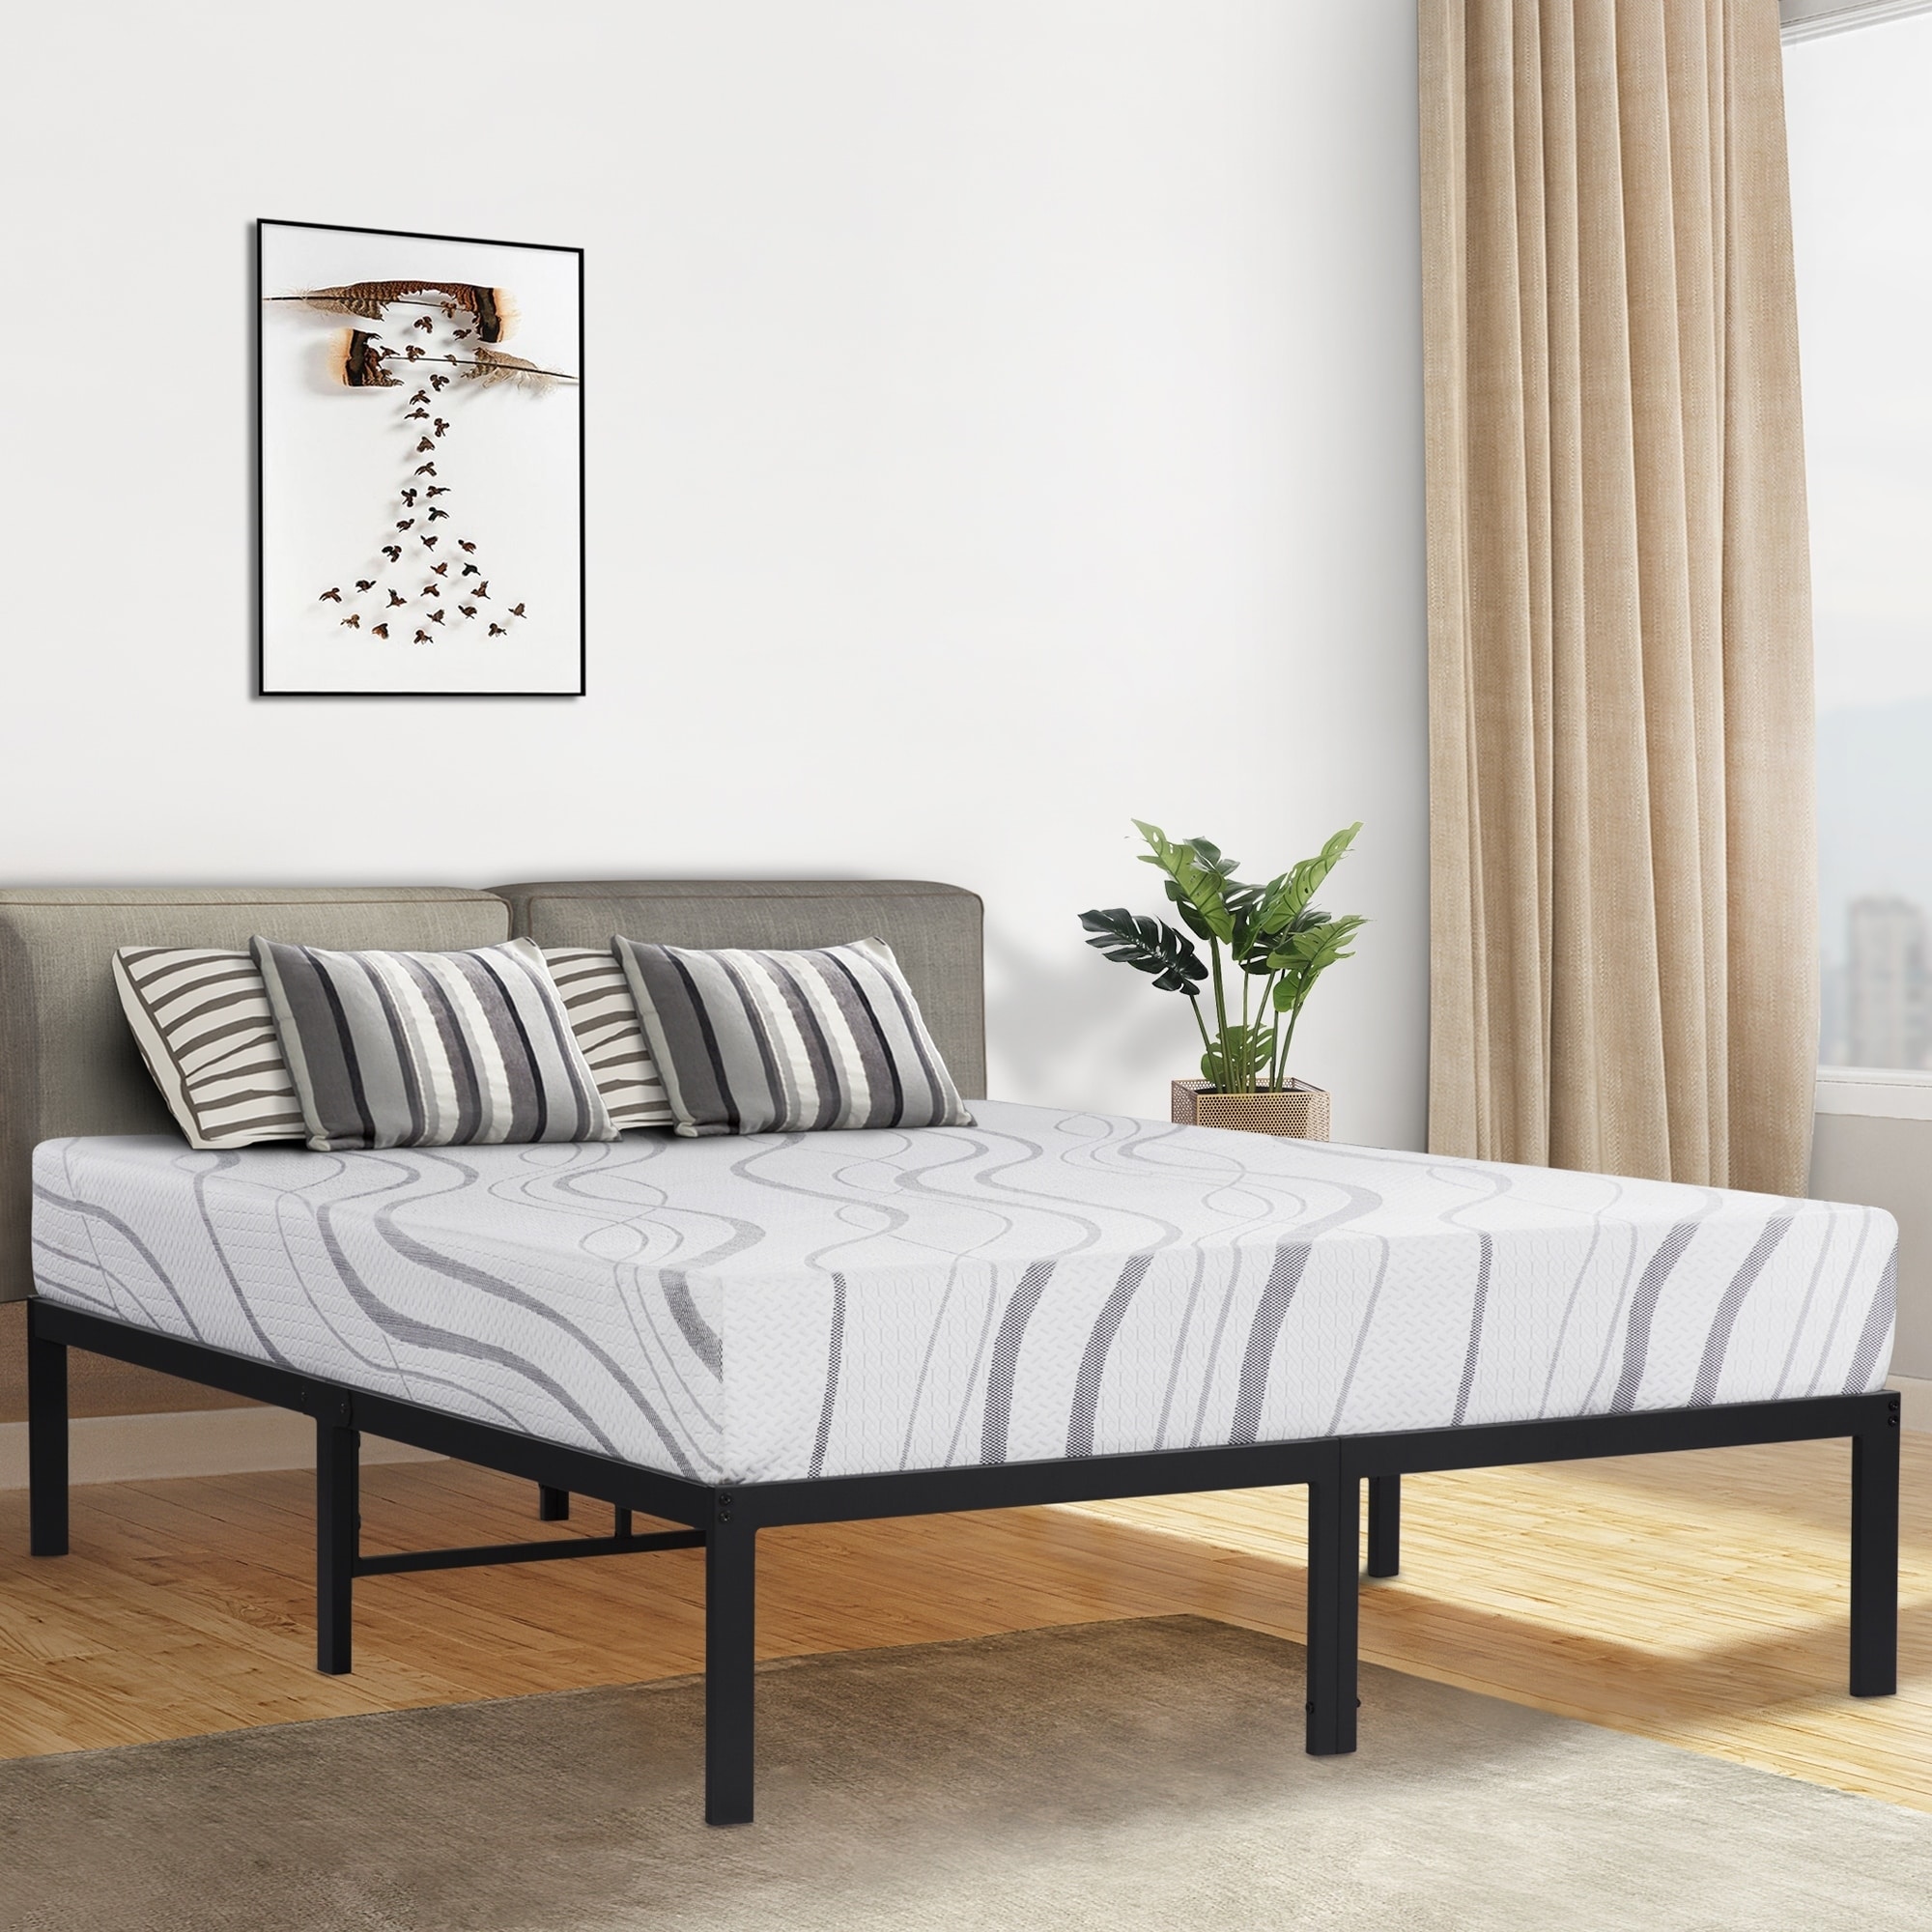 Shop Sleeplanner 14 Inch Full Size Metal Platform Bed Frame No